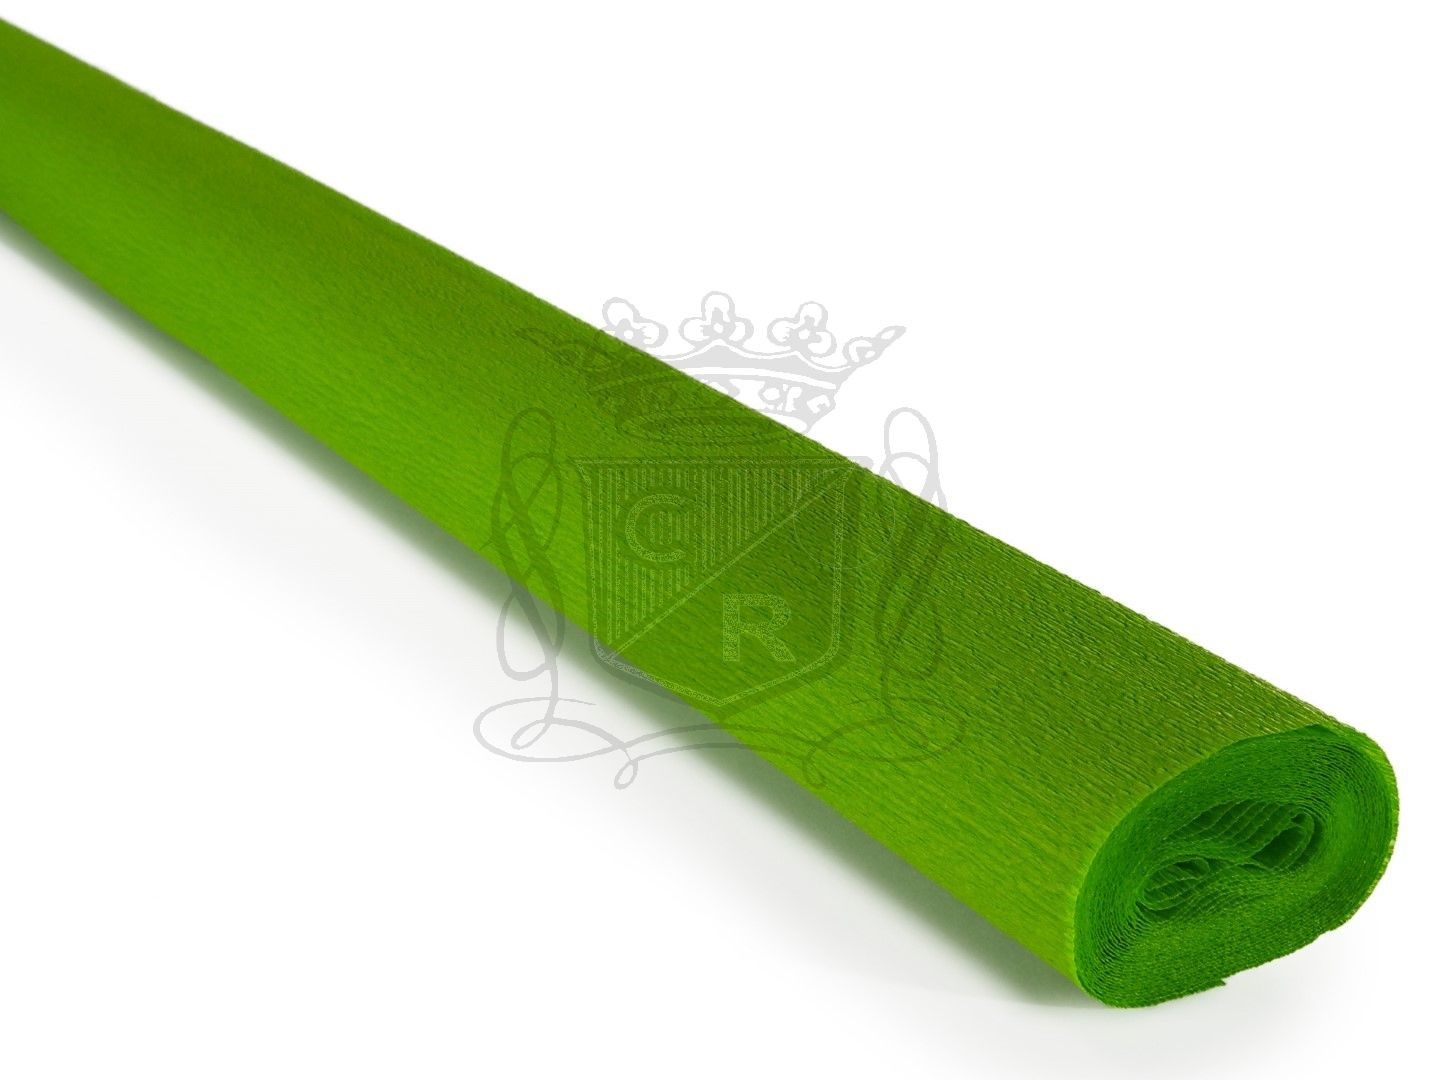 İtalyan Krapon Kağıdı No:232 - Apple Green 60 gr. 50*250 cm